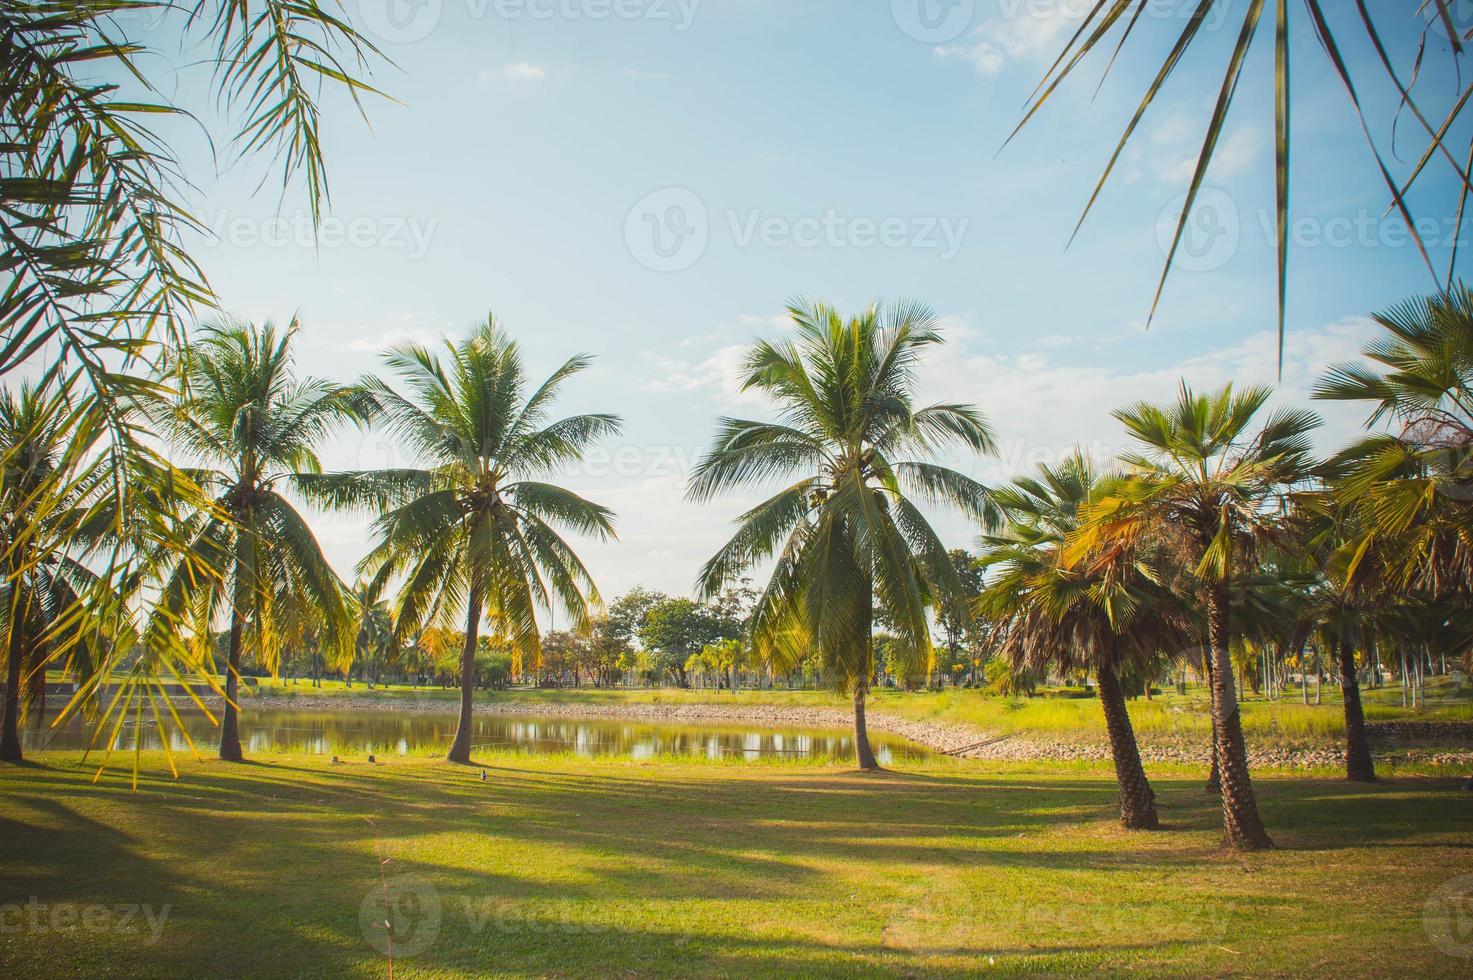 la palma de coco en el parque en verano, iluminación en el parque de día foto